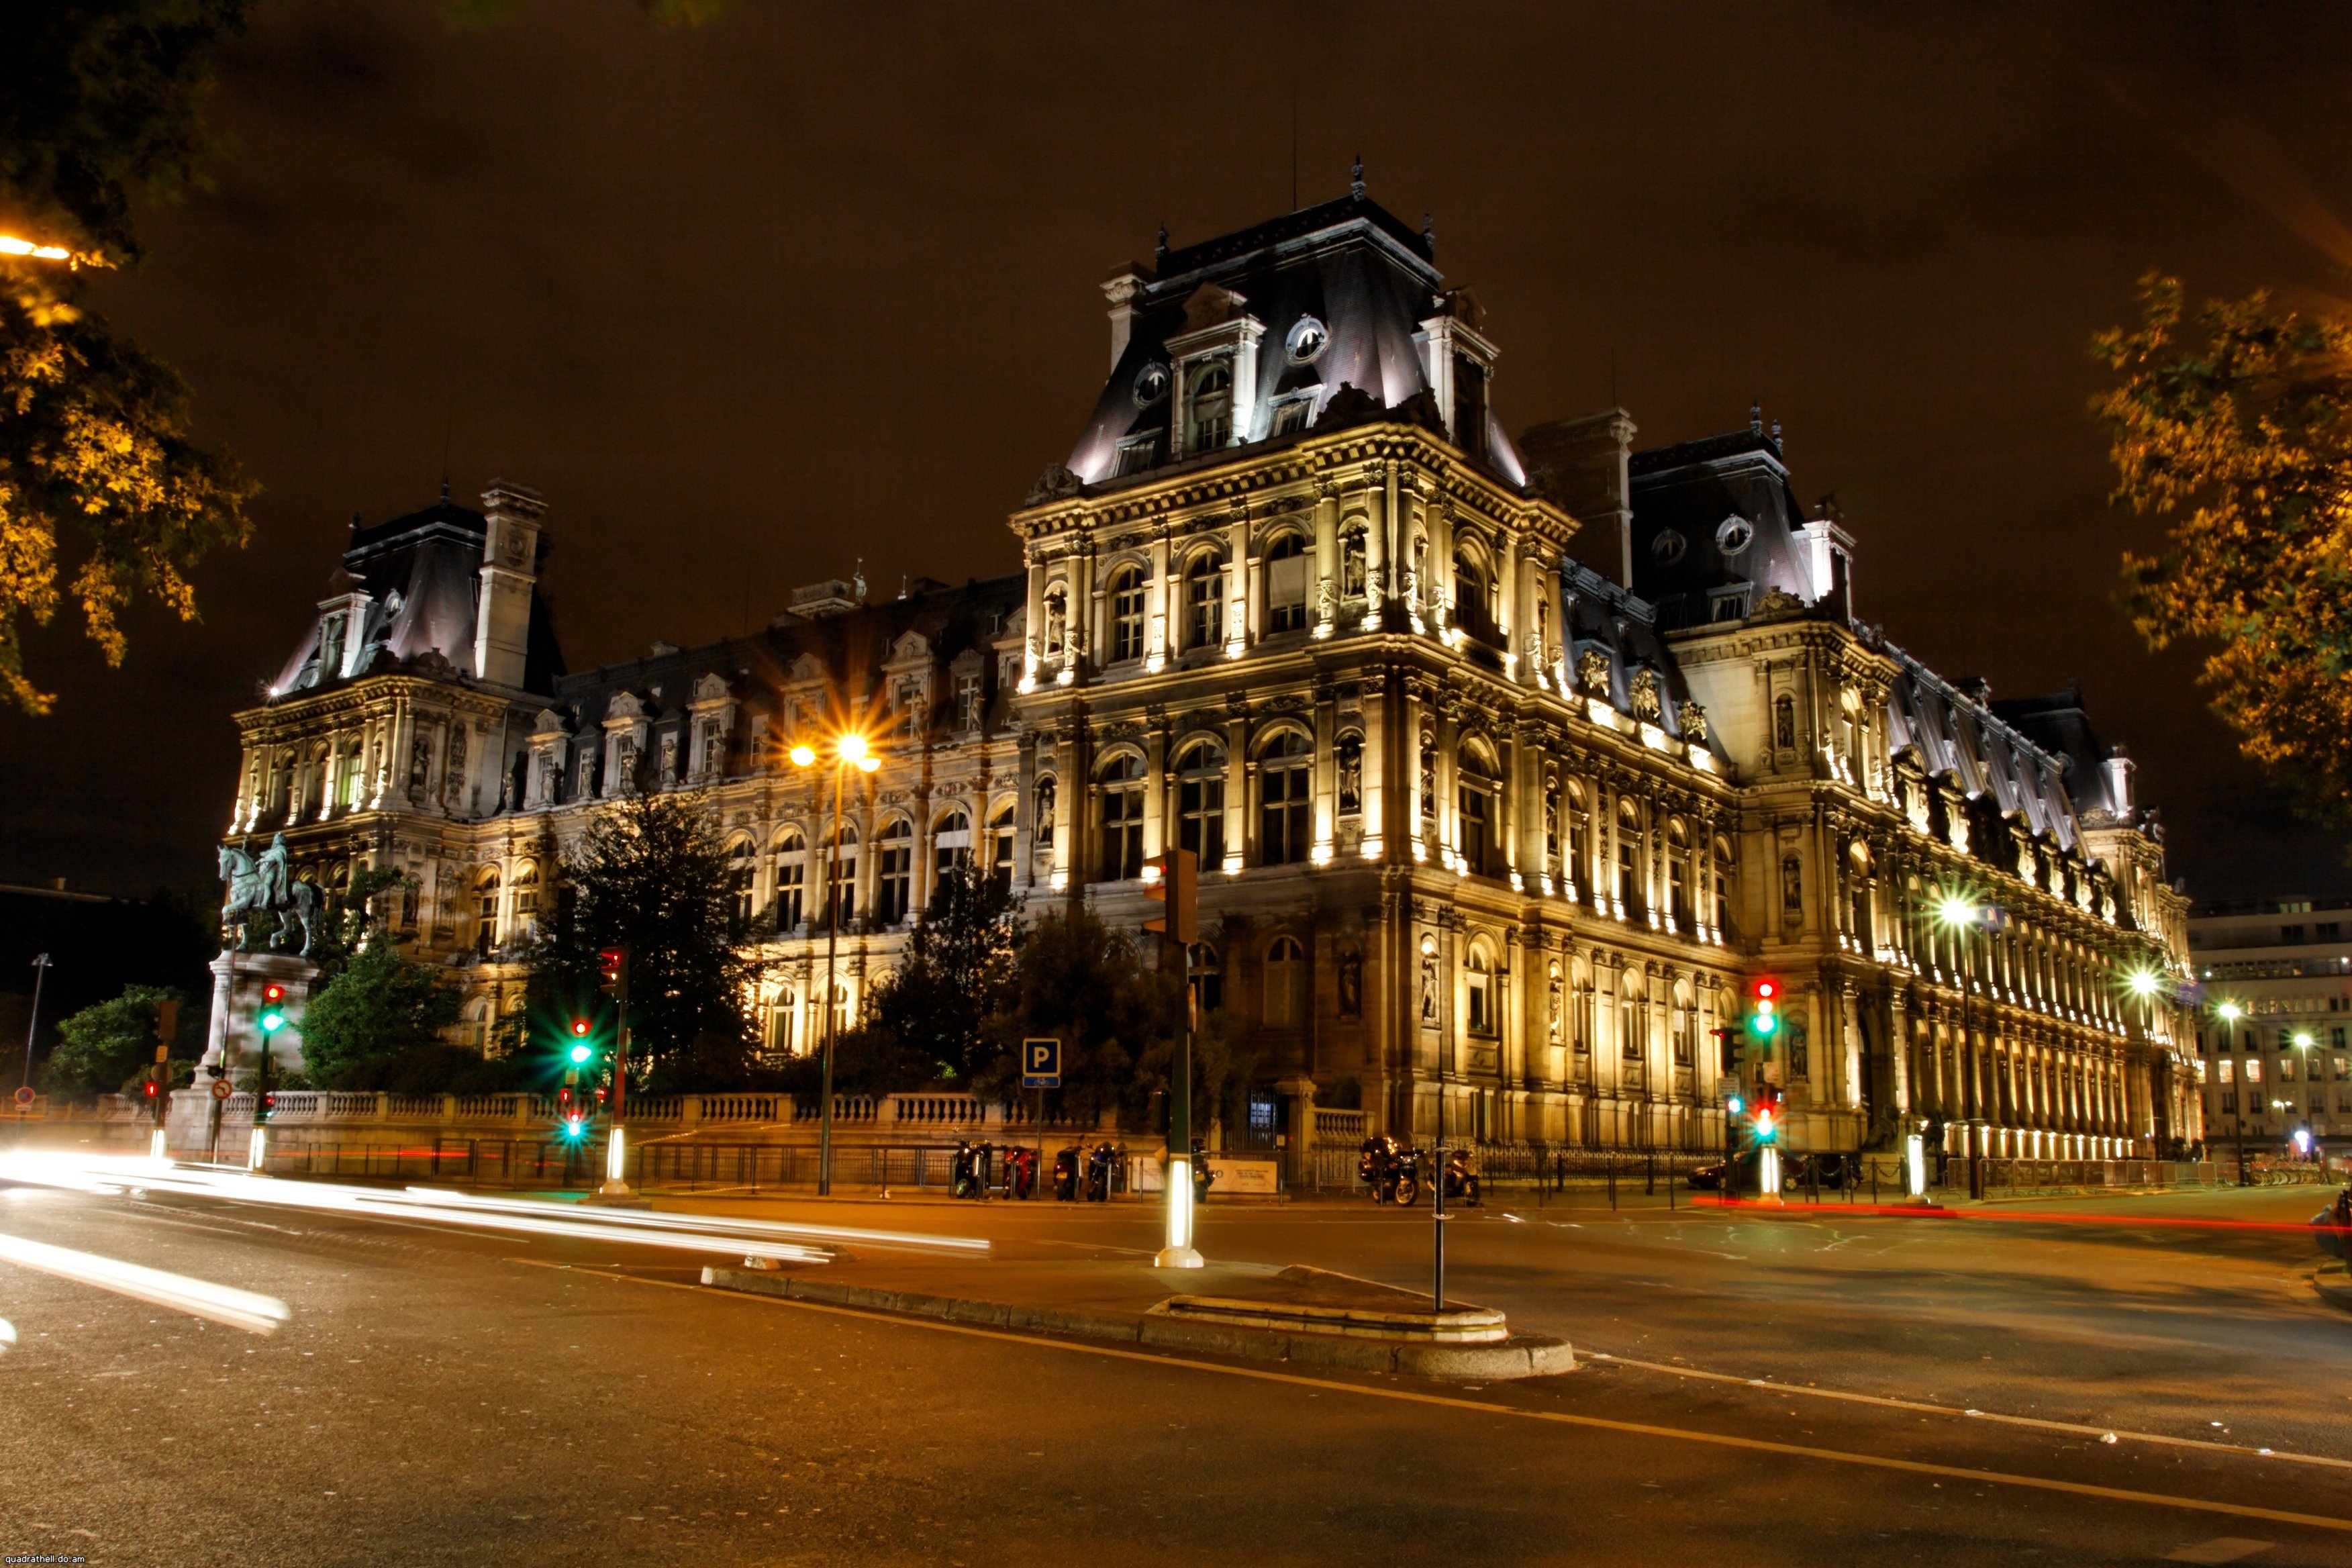 город париж ночью